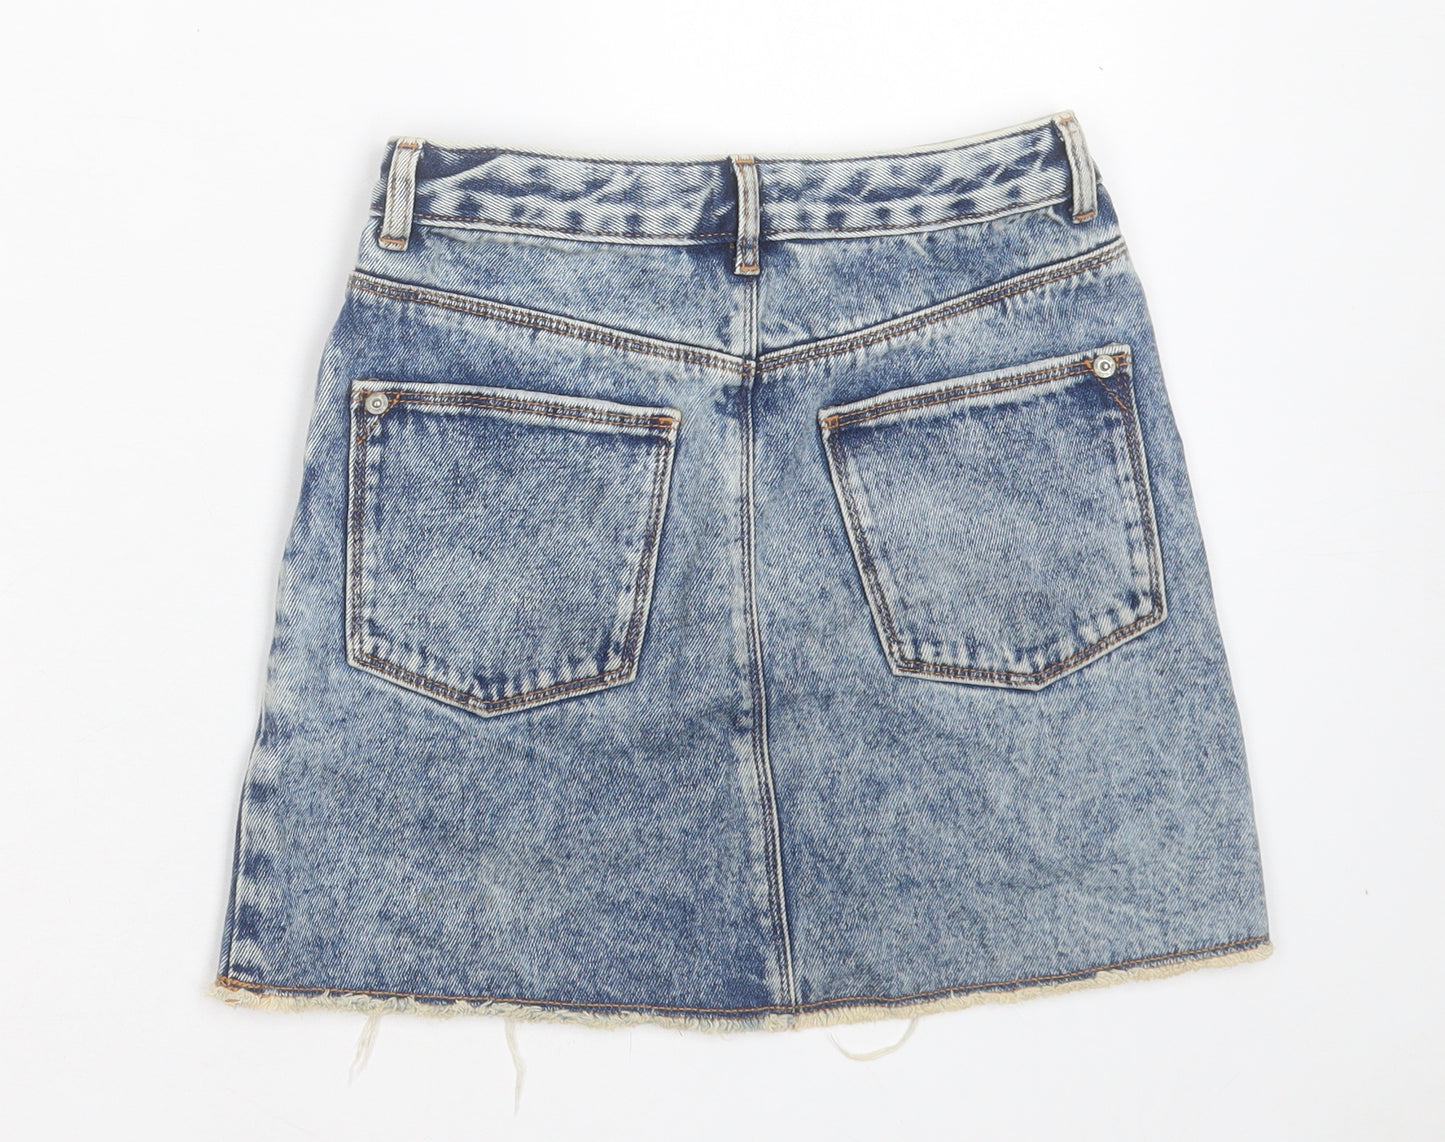 River Island Girls Blue Cotton A-Line Skirt Size 9 Years Regular Button